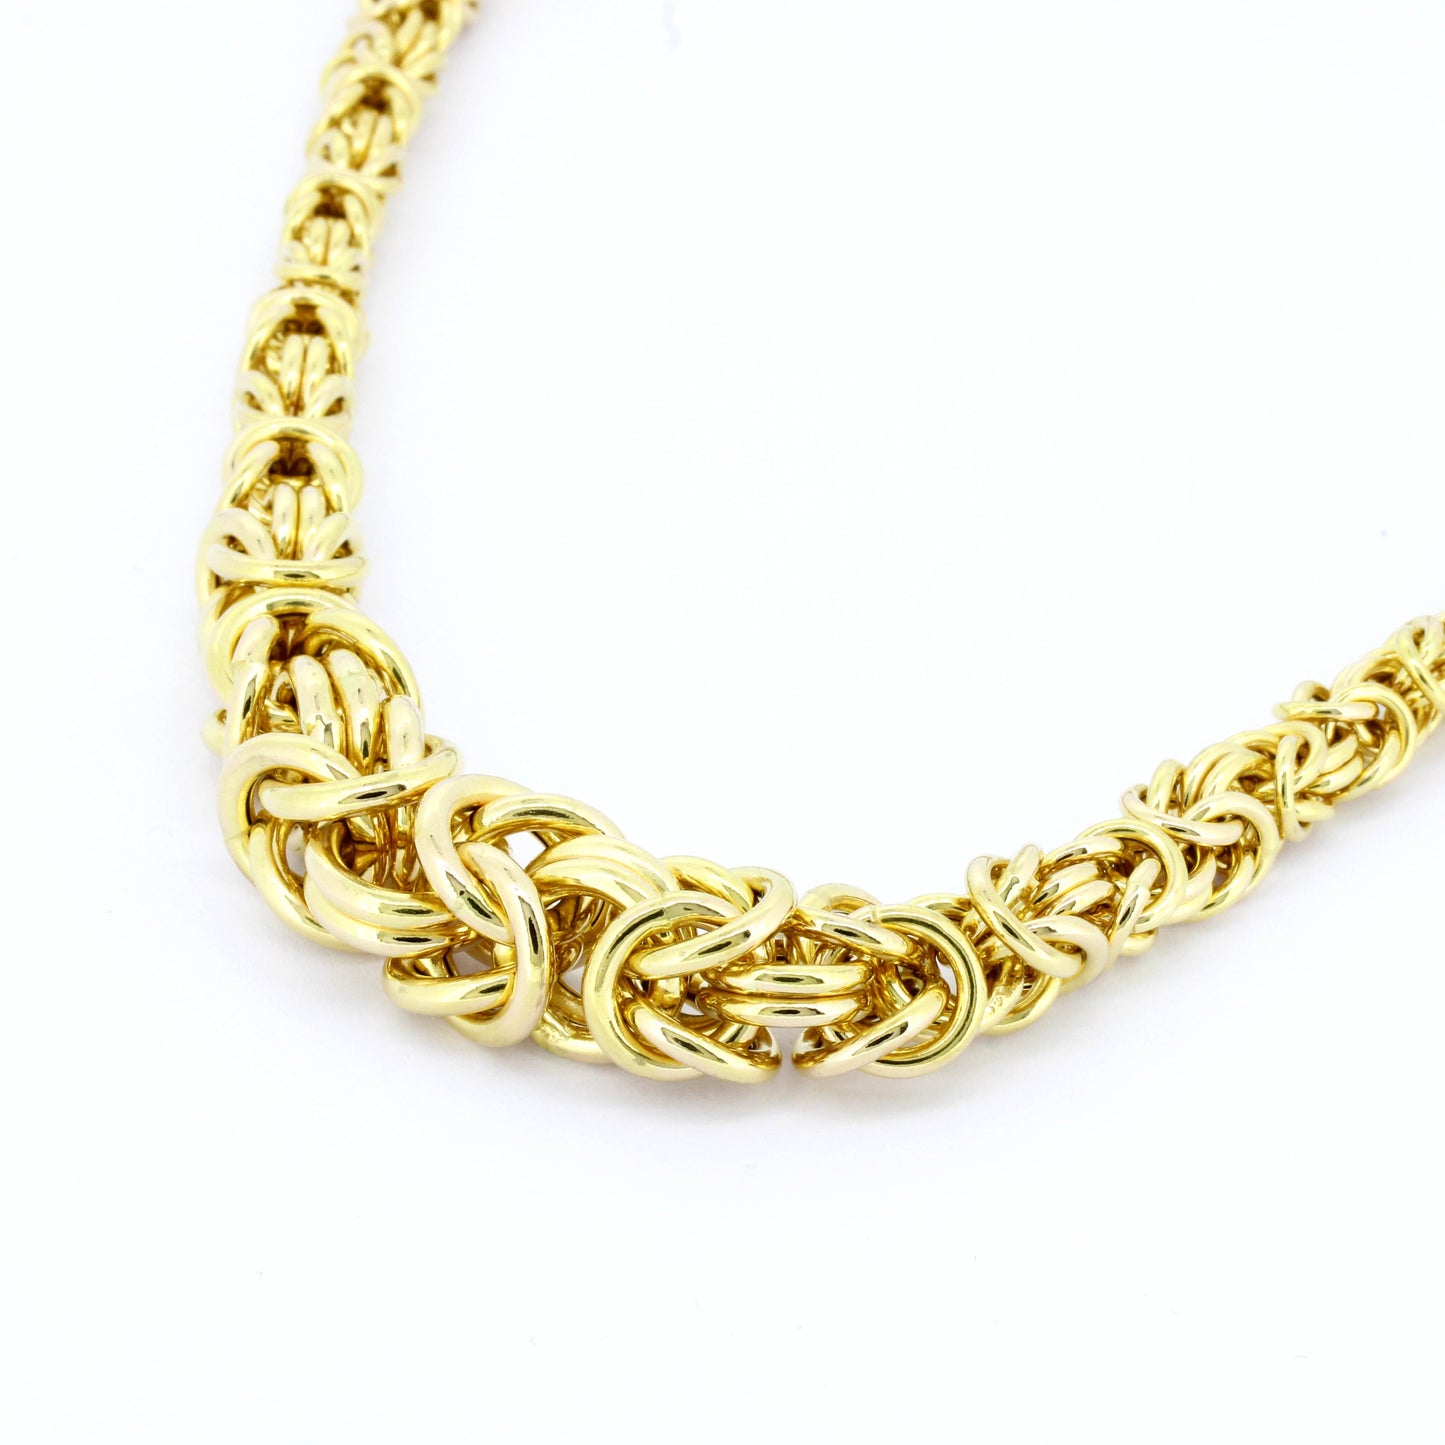 Halskette 585 Gold 14 Kt Kette im Verlauf 46 cm lang Wert 3400,-